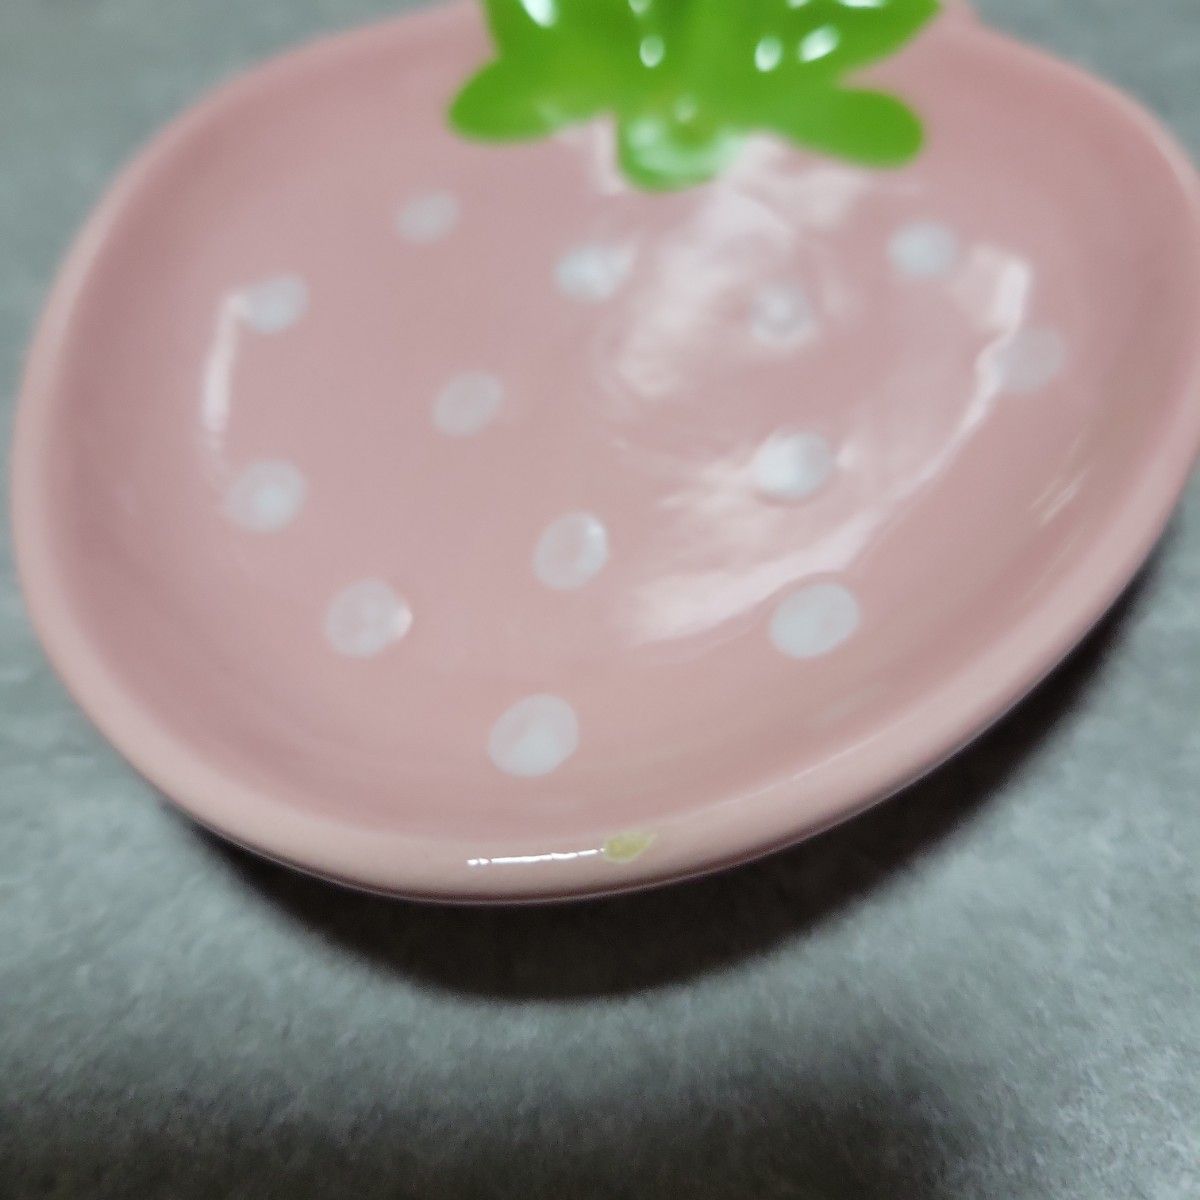 ストロベリートレイ イチゴ いちご 苺 お皿 陶器